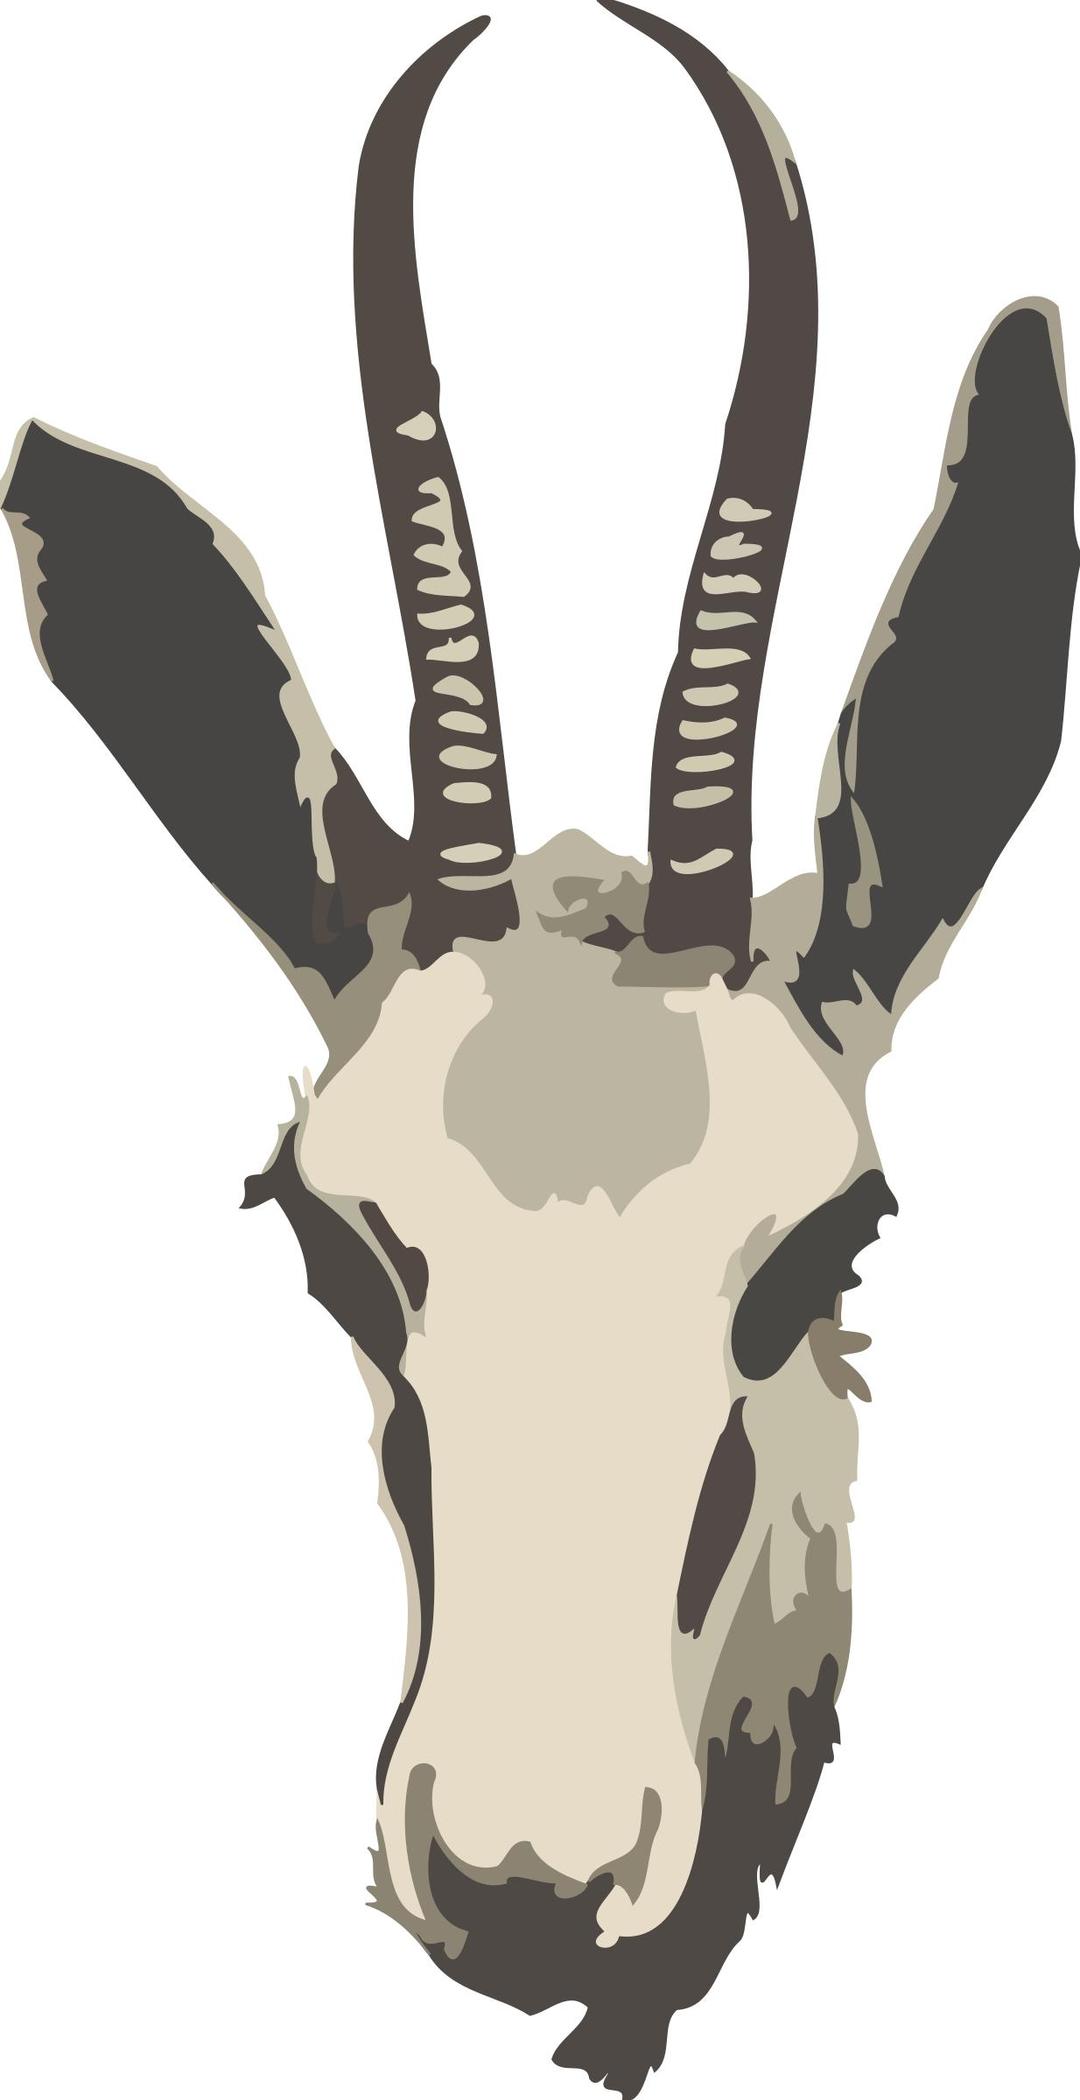 Springbok ewe's head (simplified) png transparent